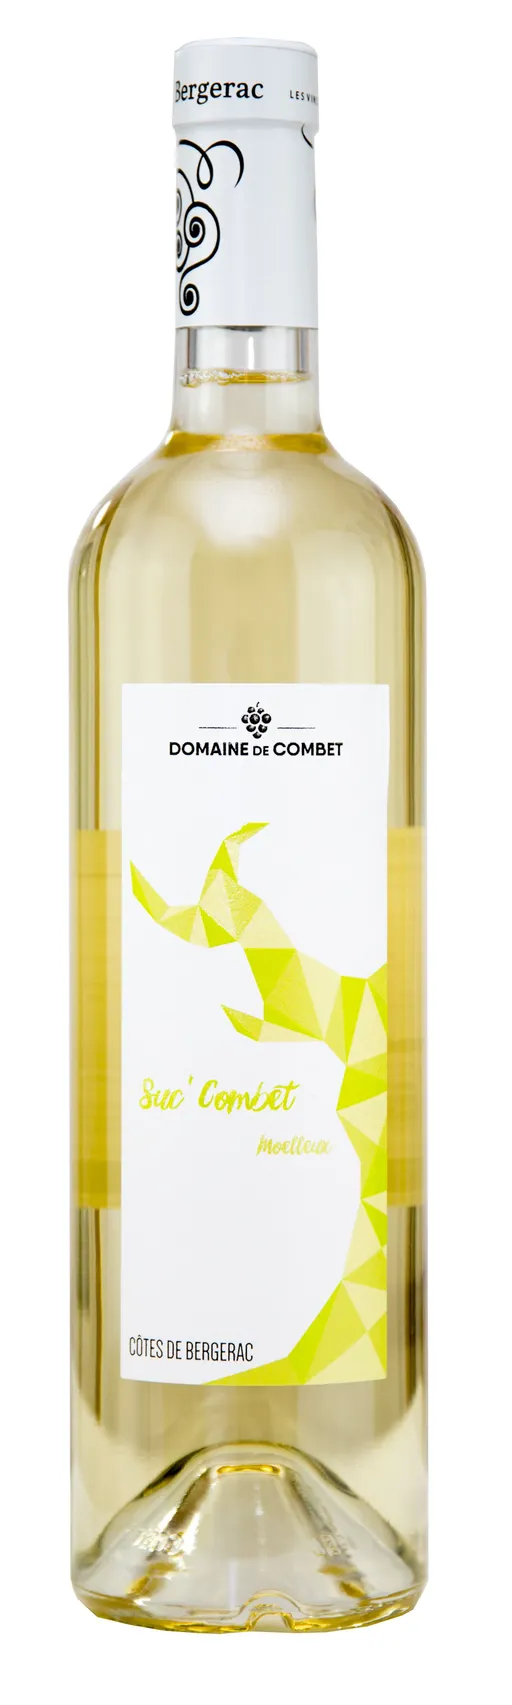 Earl de Combet SUC'COMBET, Bianco, 2021, Côtes de Bergerac. Immagine della bottiglia